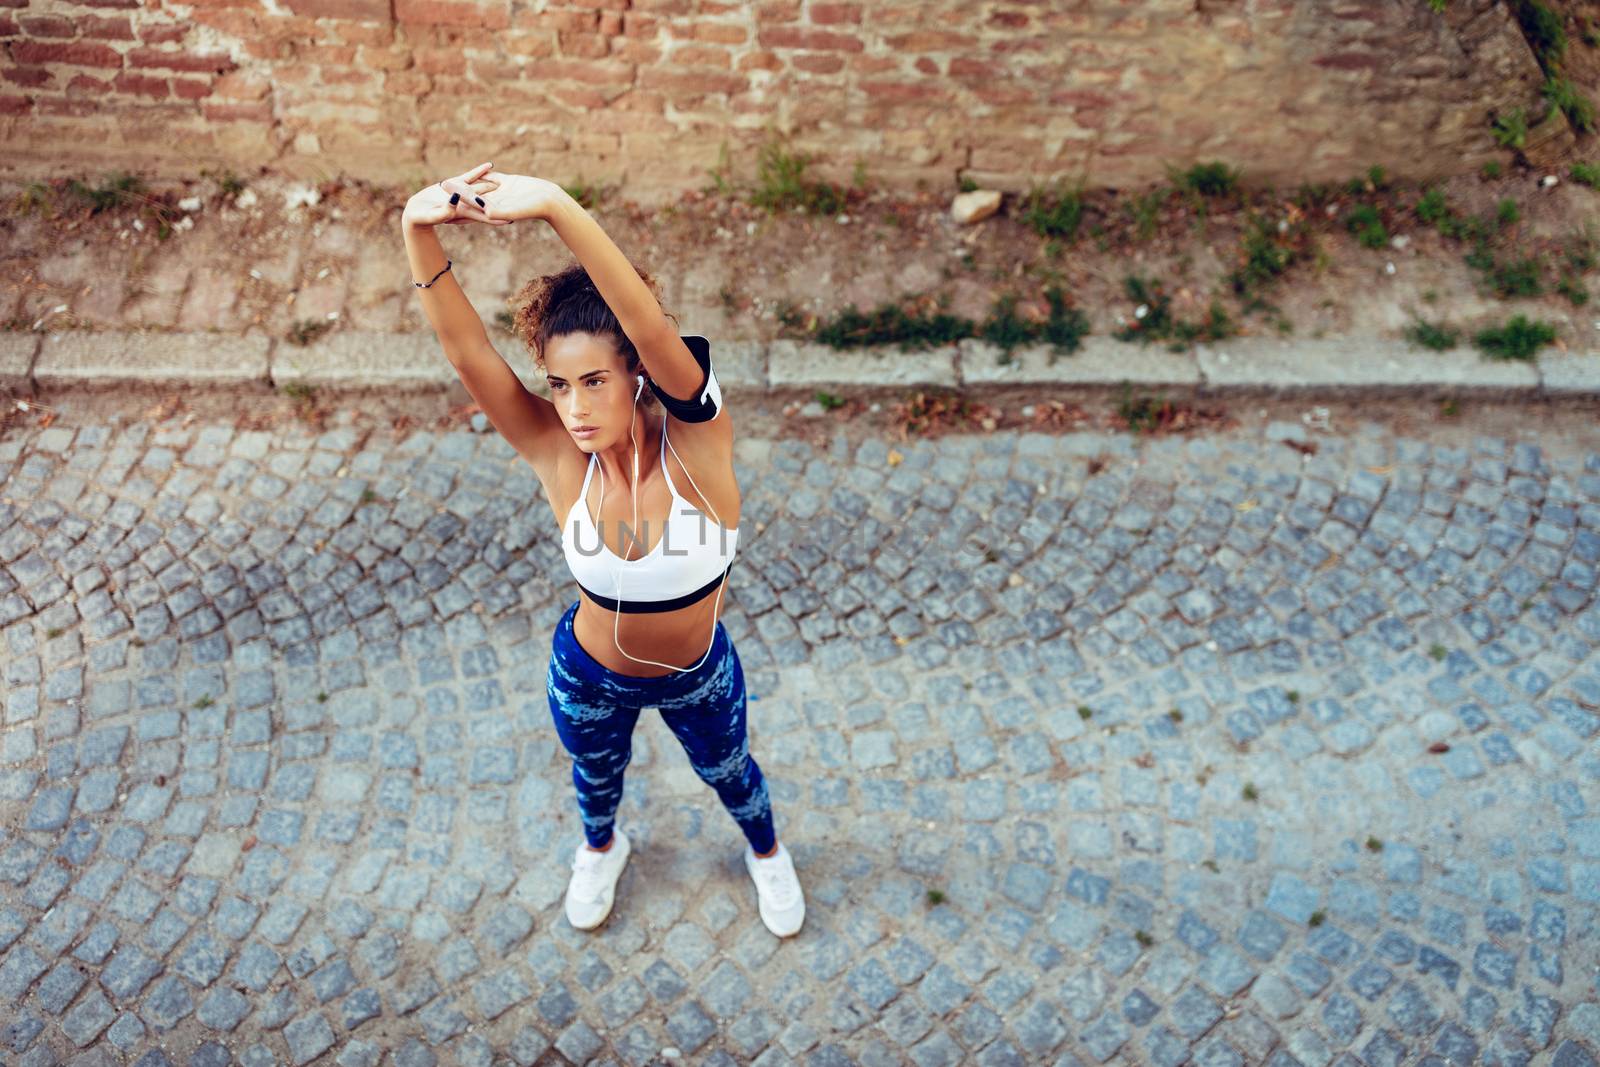 Urban Runner Girl Stretching by MilanMarkovic78